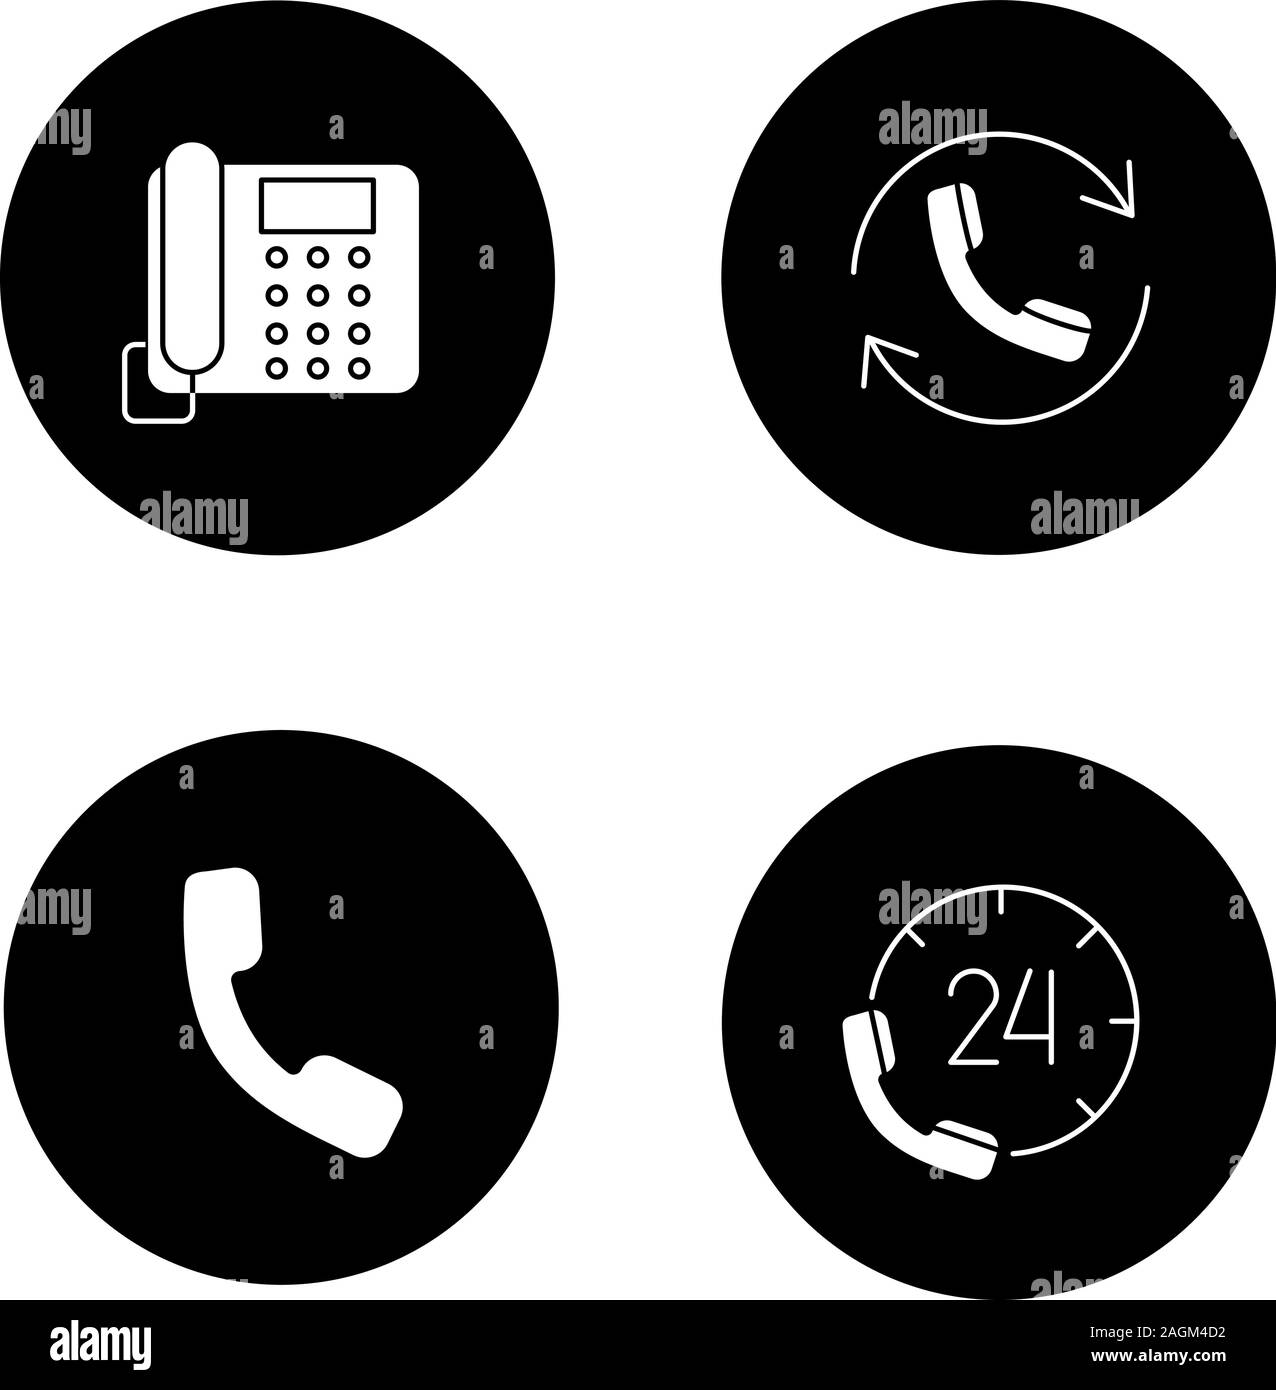 Glyphe de communication téléphonique icons set. Téléphone fixe, hotline, combiné, appelant. Vector silhouettes blanc illustrations de cercles noirs Illustration de Vecteur